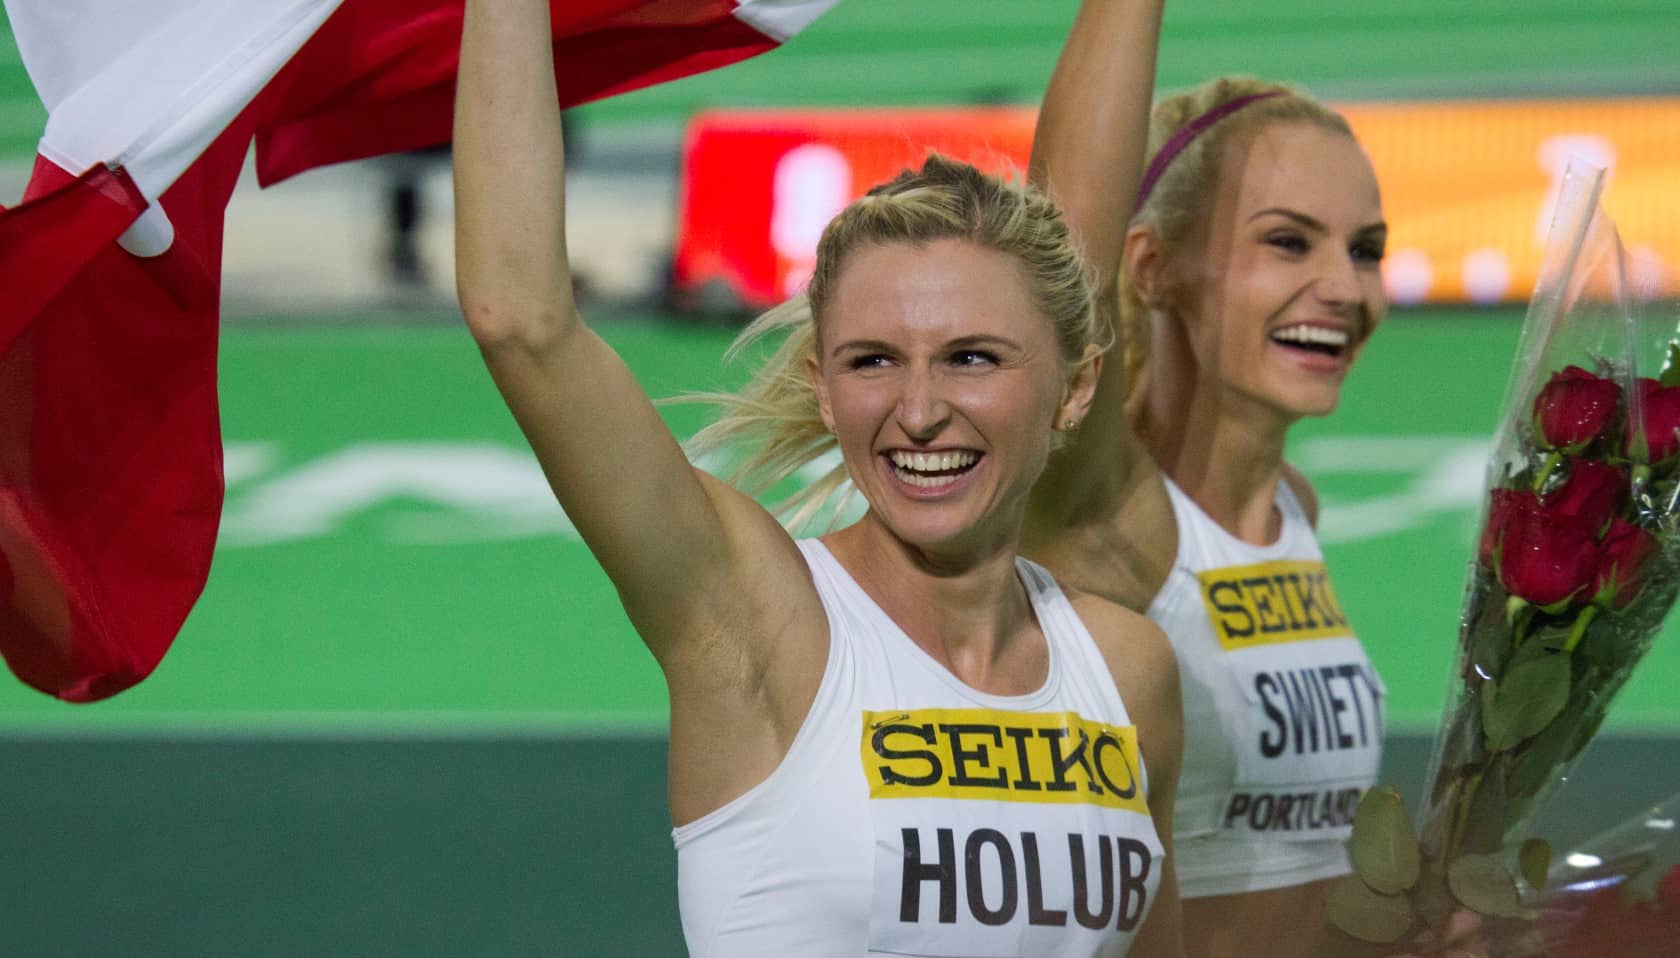 Mistrzostwa Polski w lekkiej atletyce: trzy dni emocji i zaskakujących rozstrzygnięć